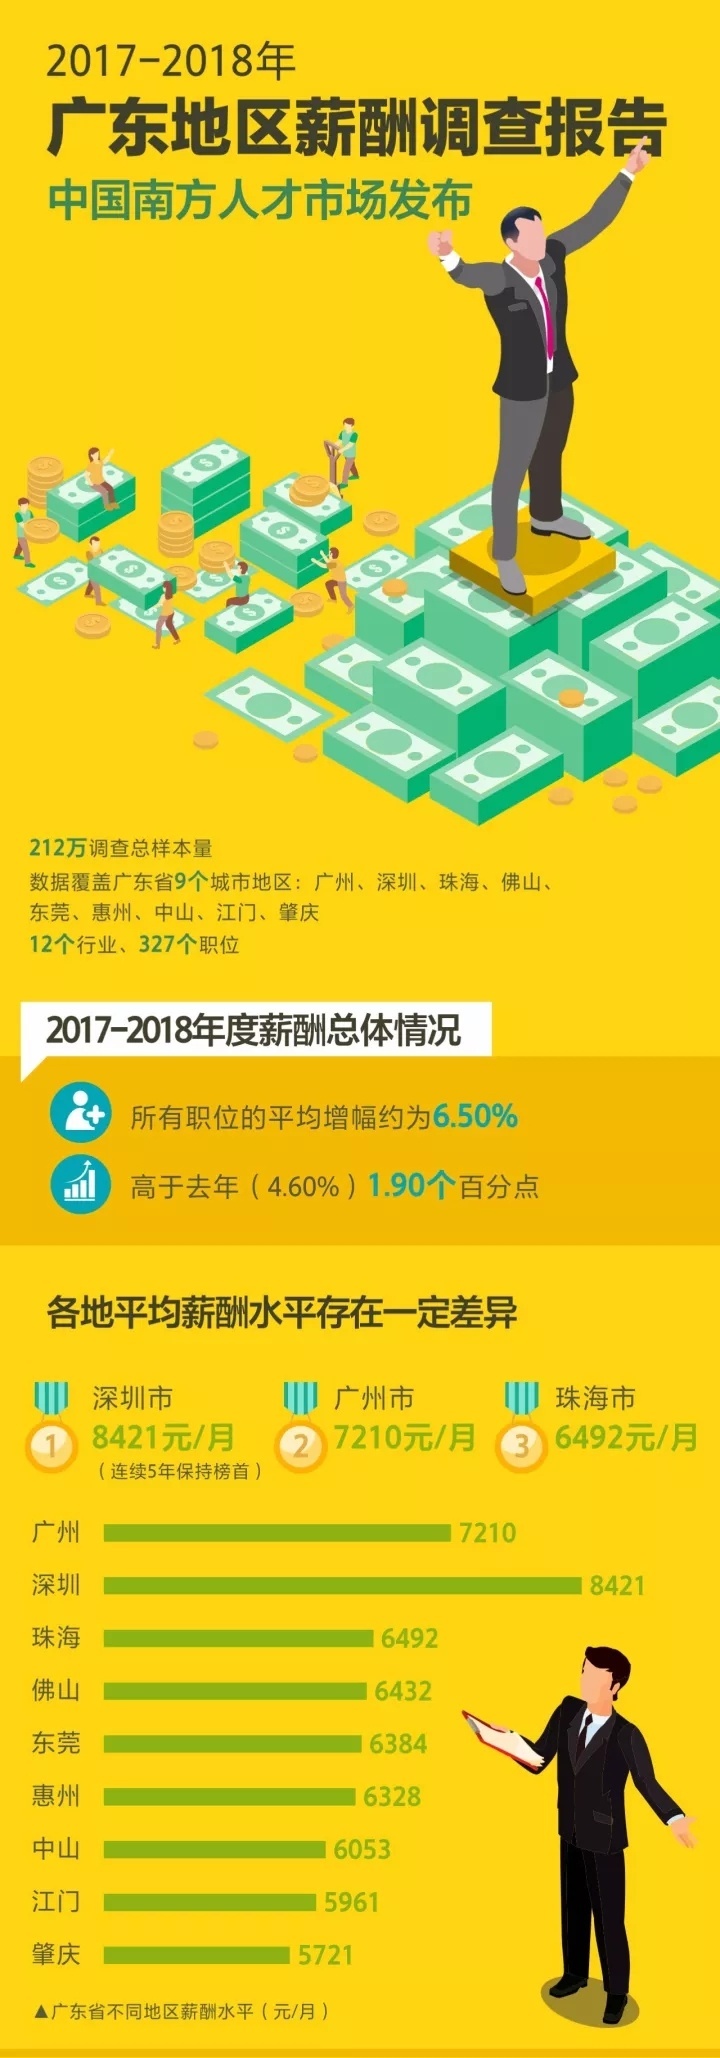 6328元!2017惠州平均工资出炉,薪酬最高的行